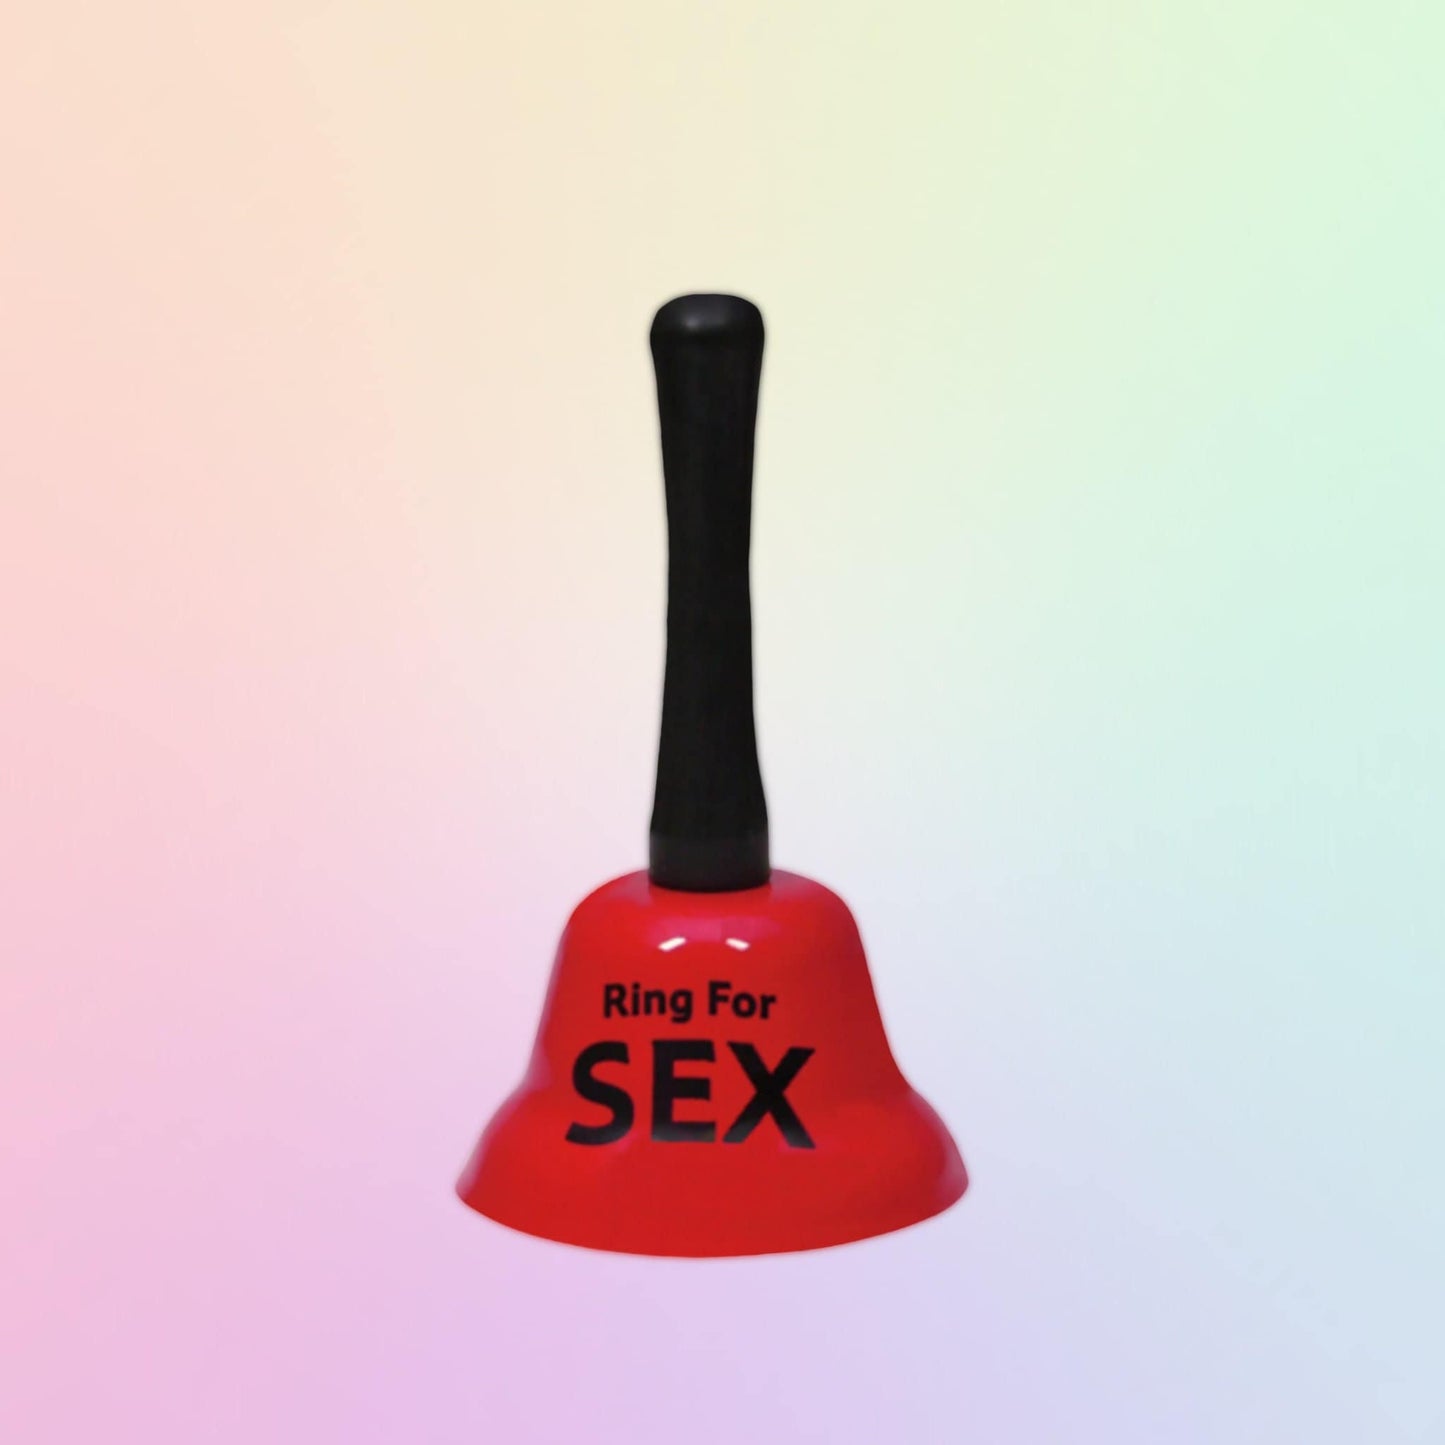 Glocke "Ring for Sex" Handklingel - OH MY! FANTASY